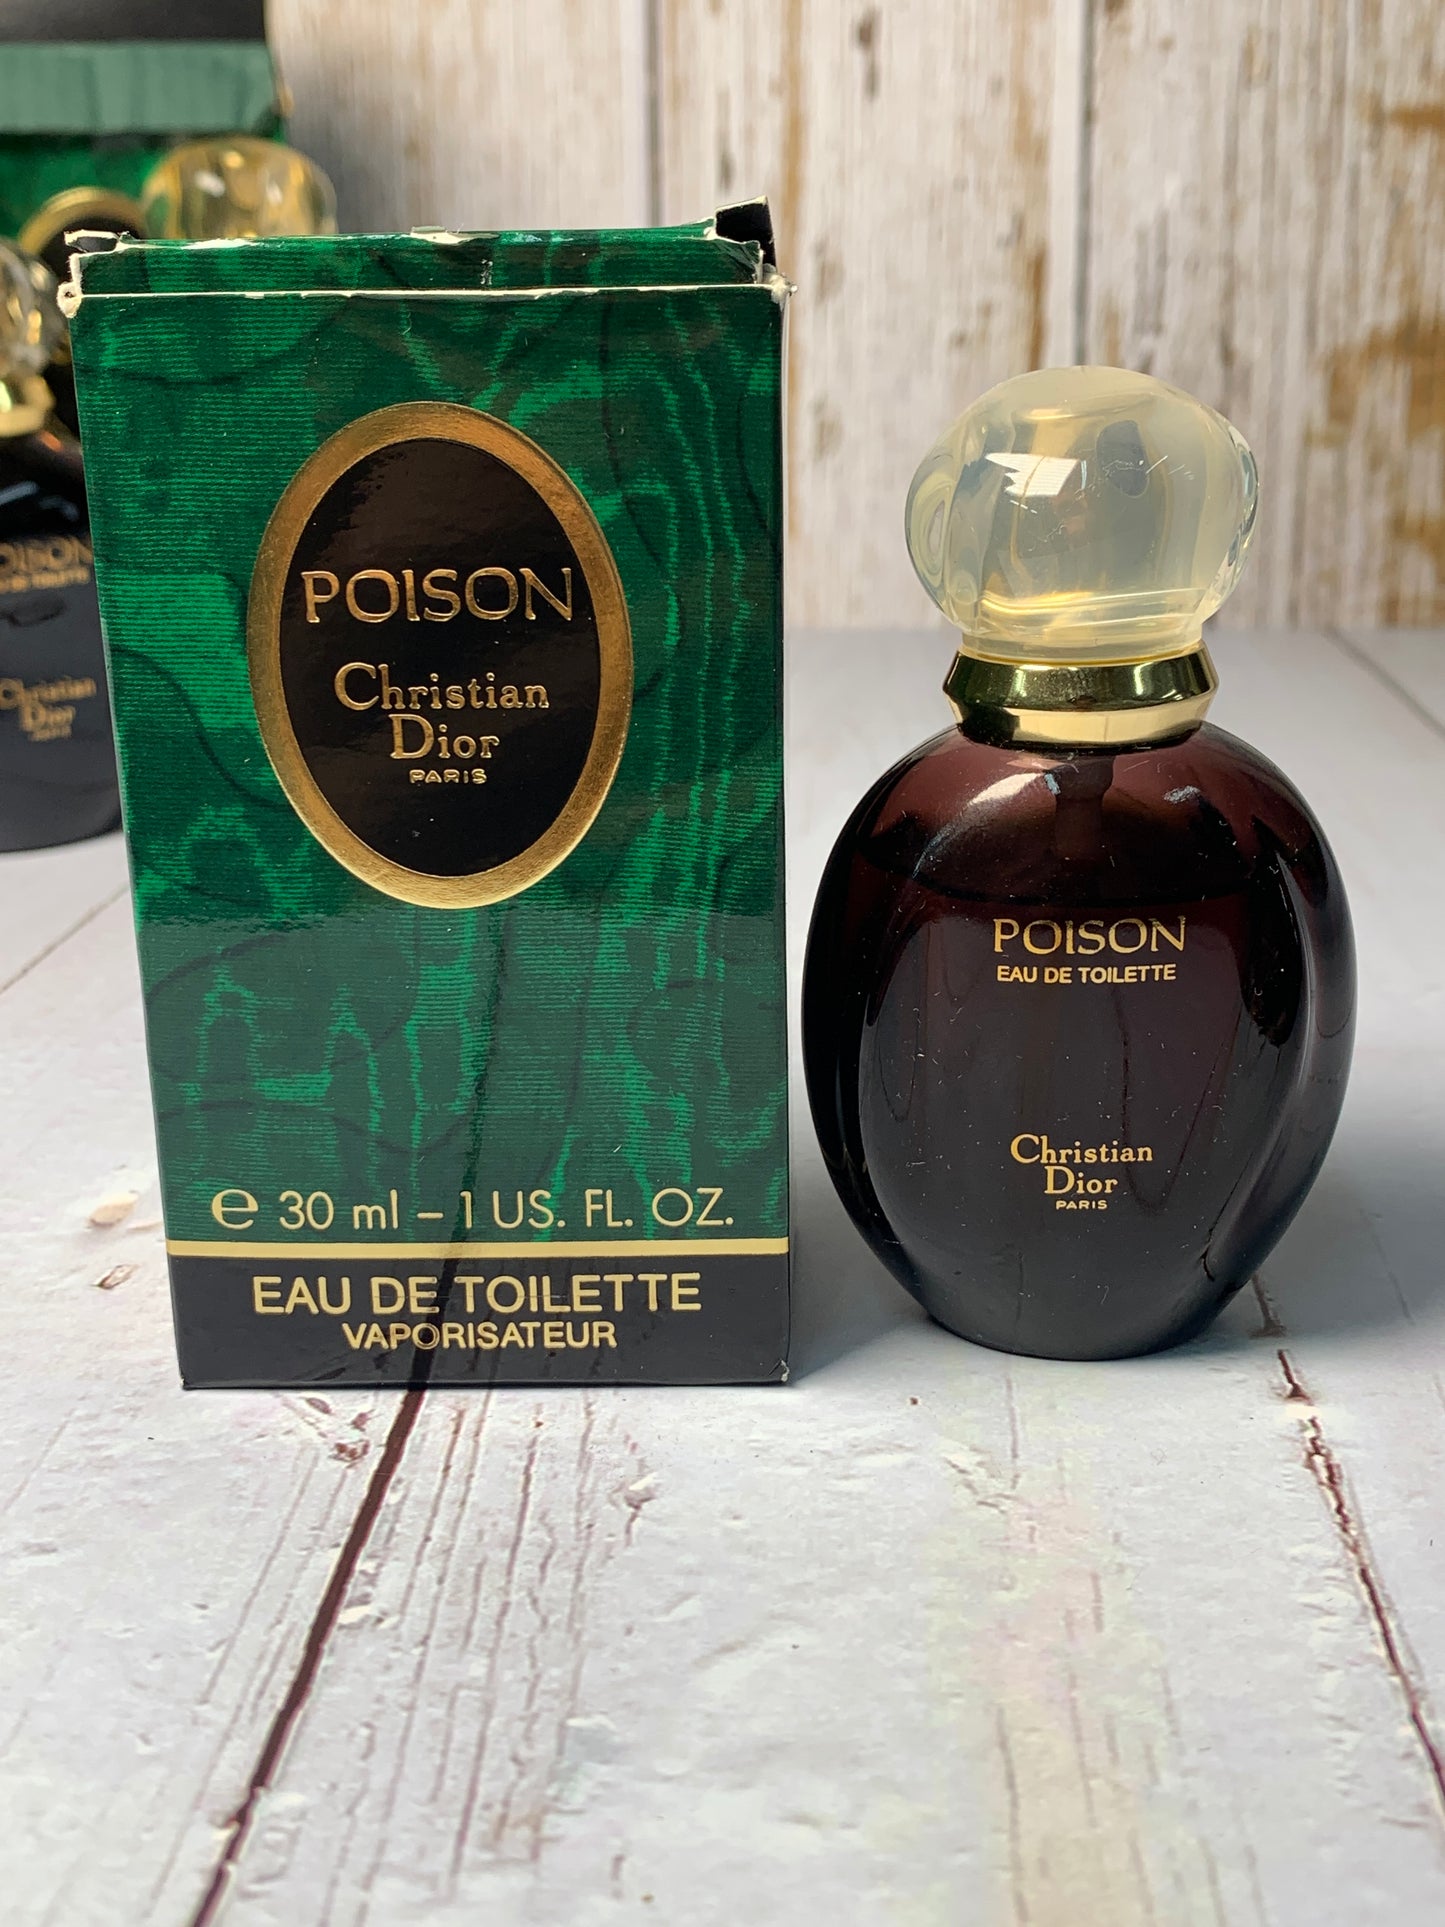 Dior Pure Poison Perfume for Women - Eau de Parfum – Fragrance Outlet